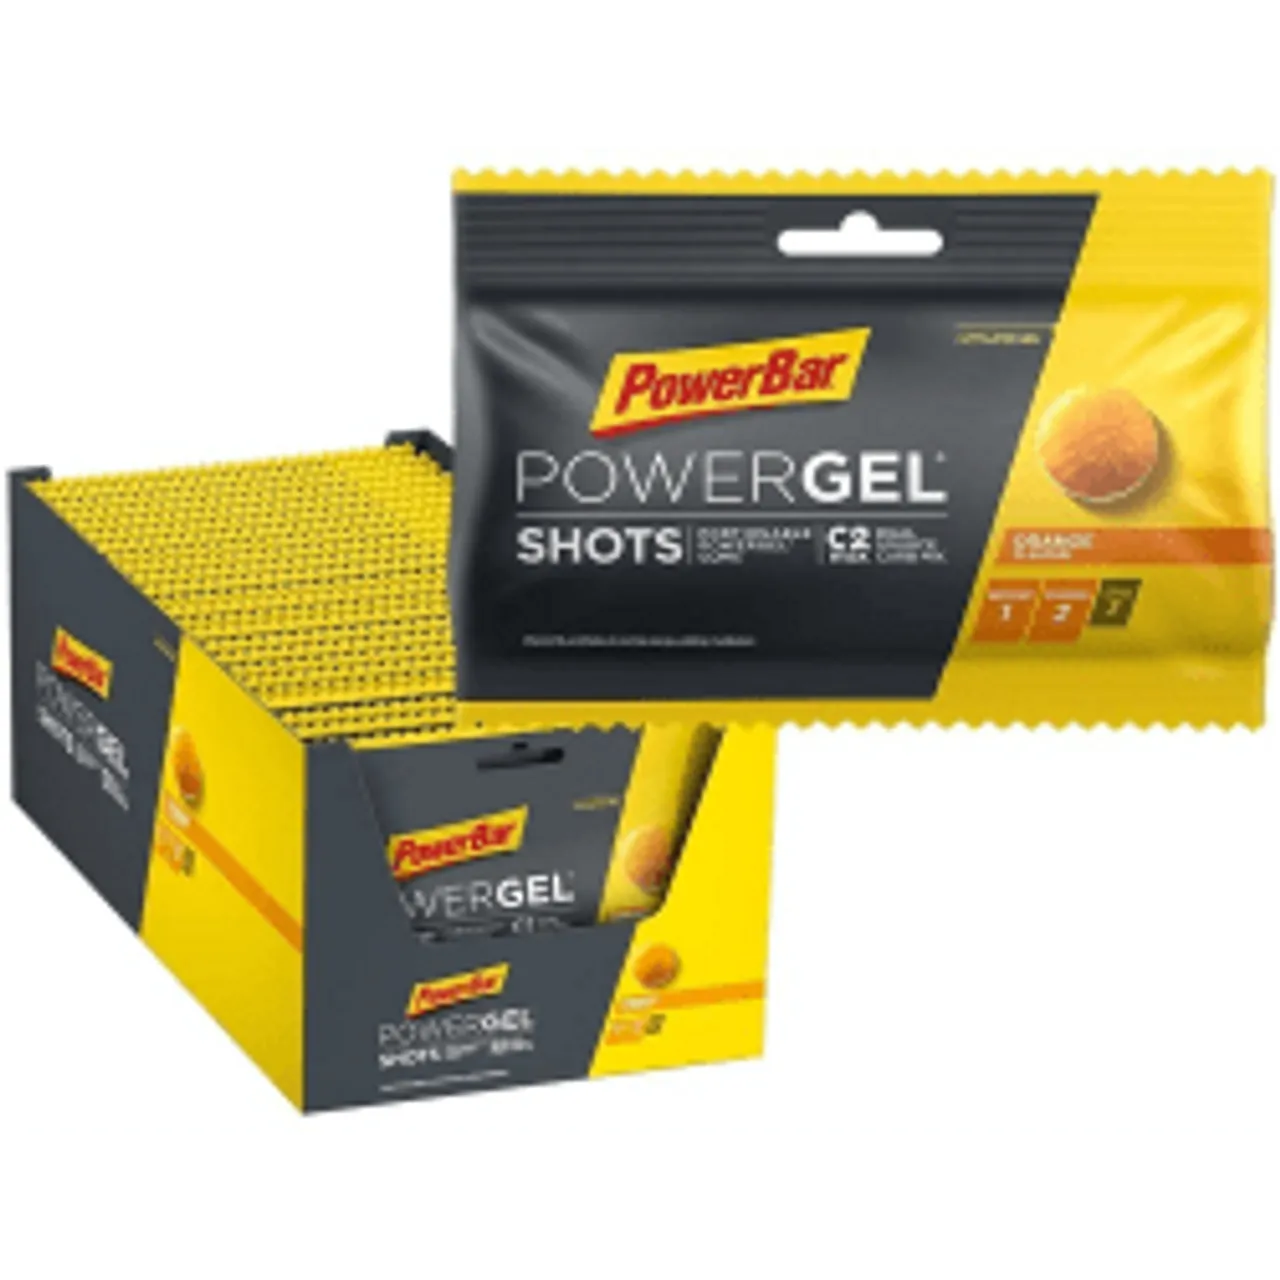 Powergel Shots - 24x60g - Orange